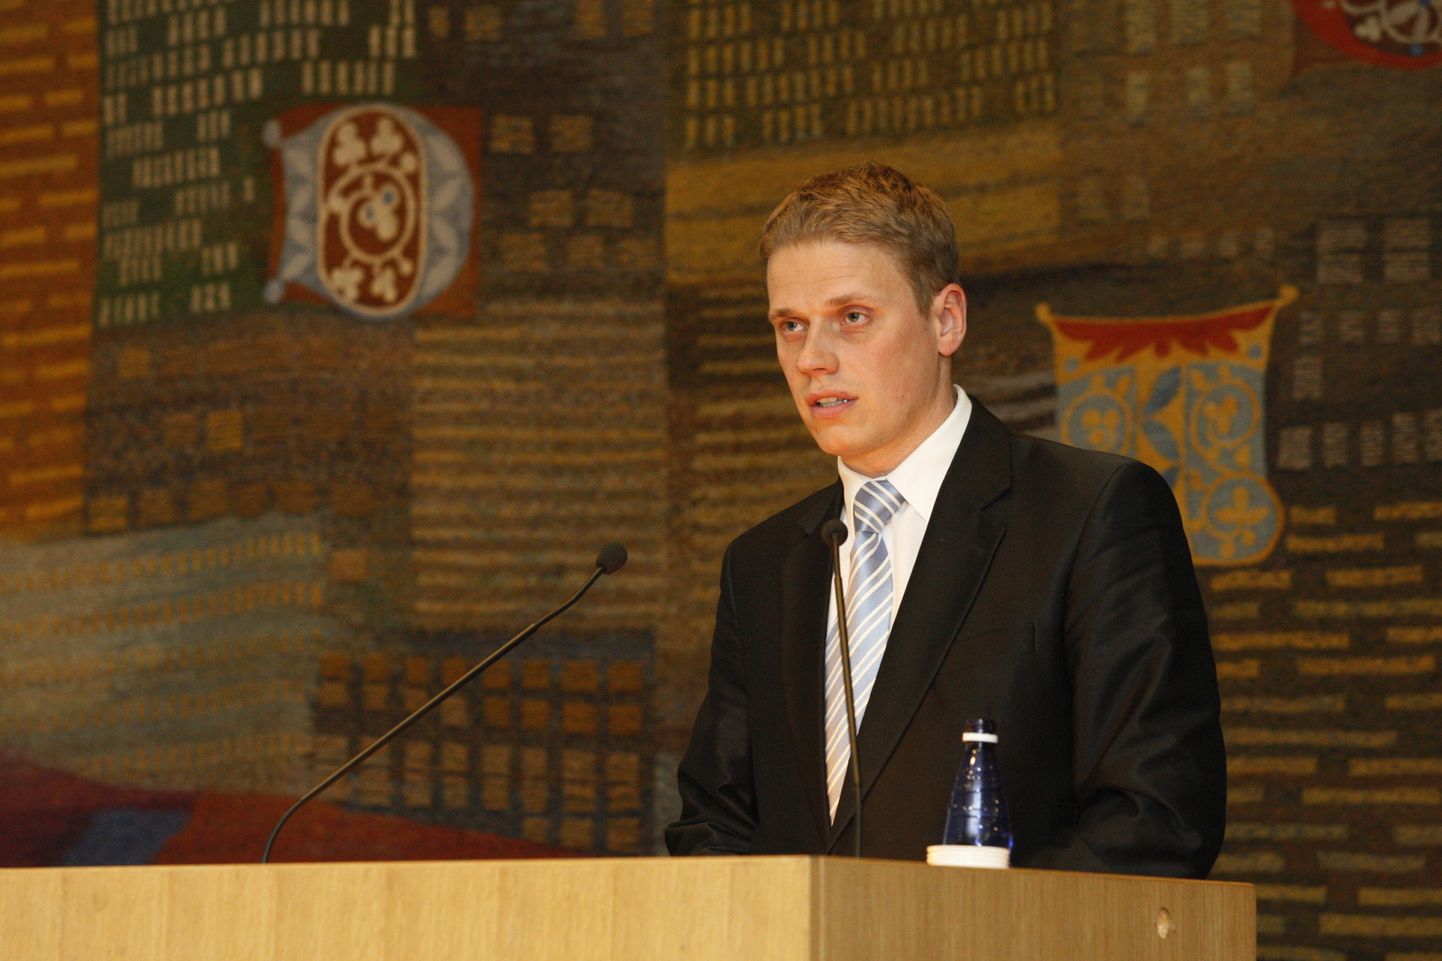 Арго Аннук на вчерашнем заседании горсобрания Тарту.